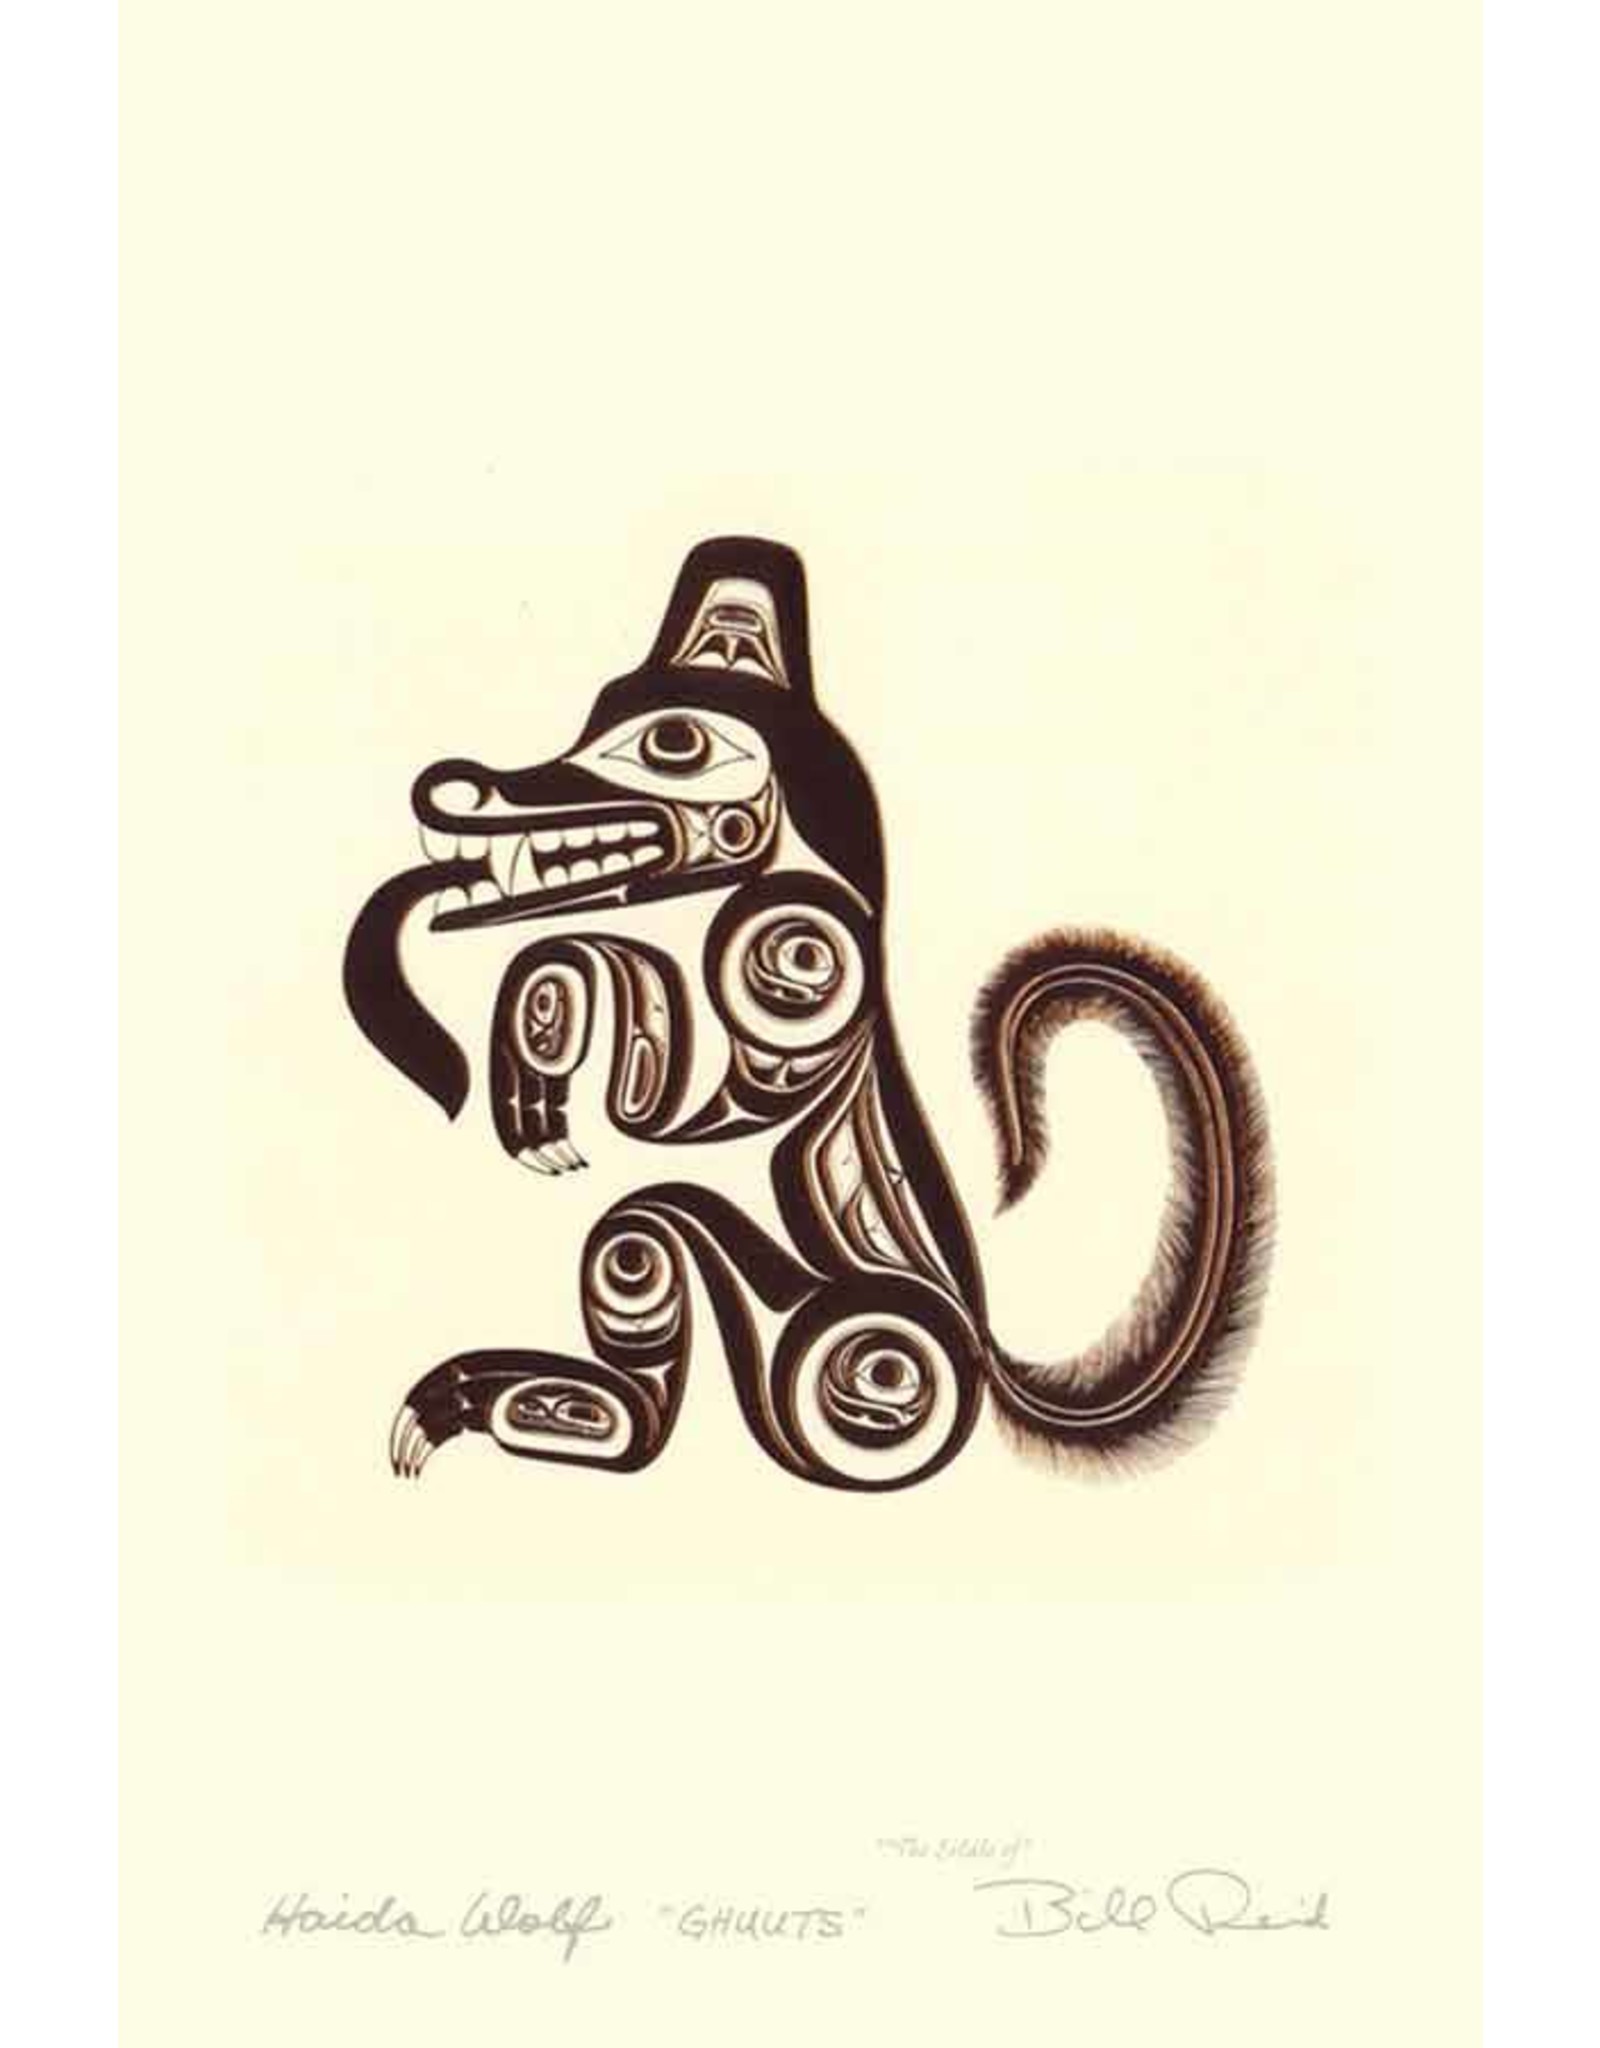 Haida Wolf - Ghuuts by Bill Reid Matted